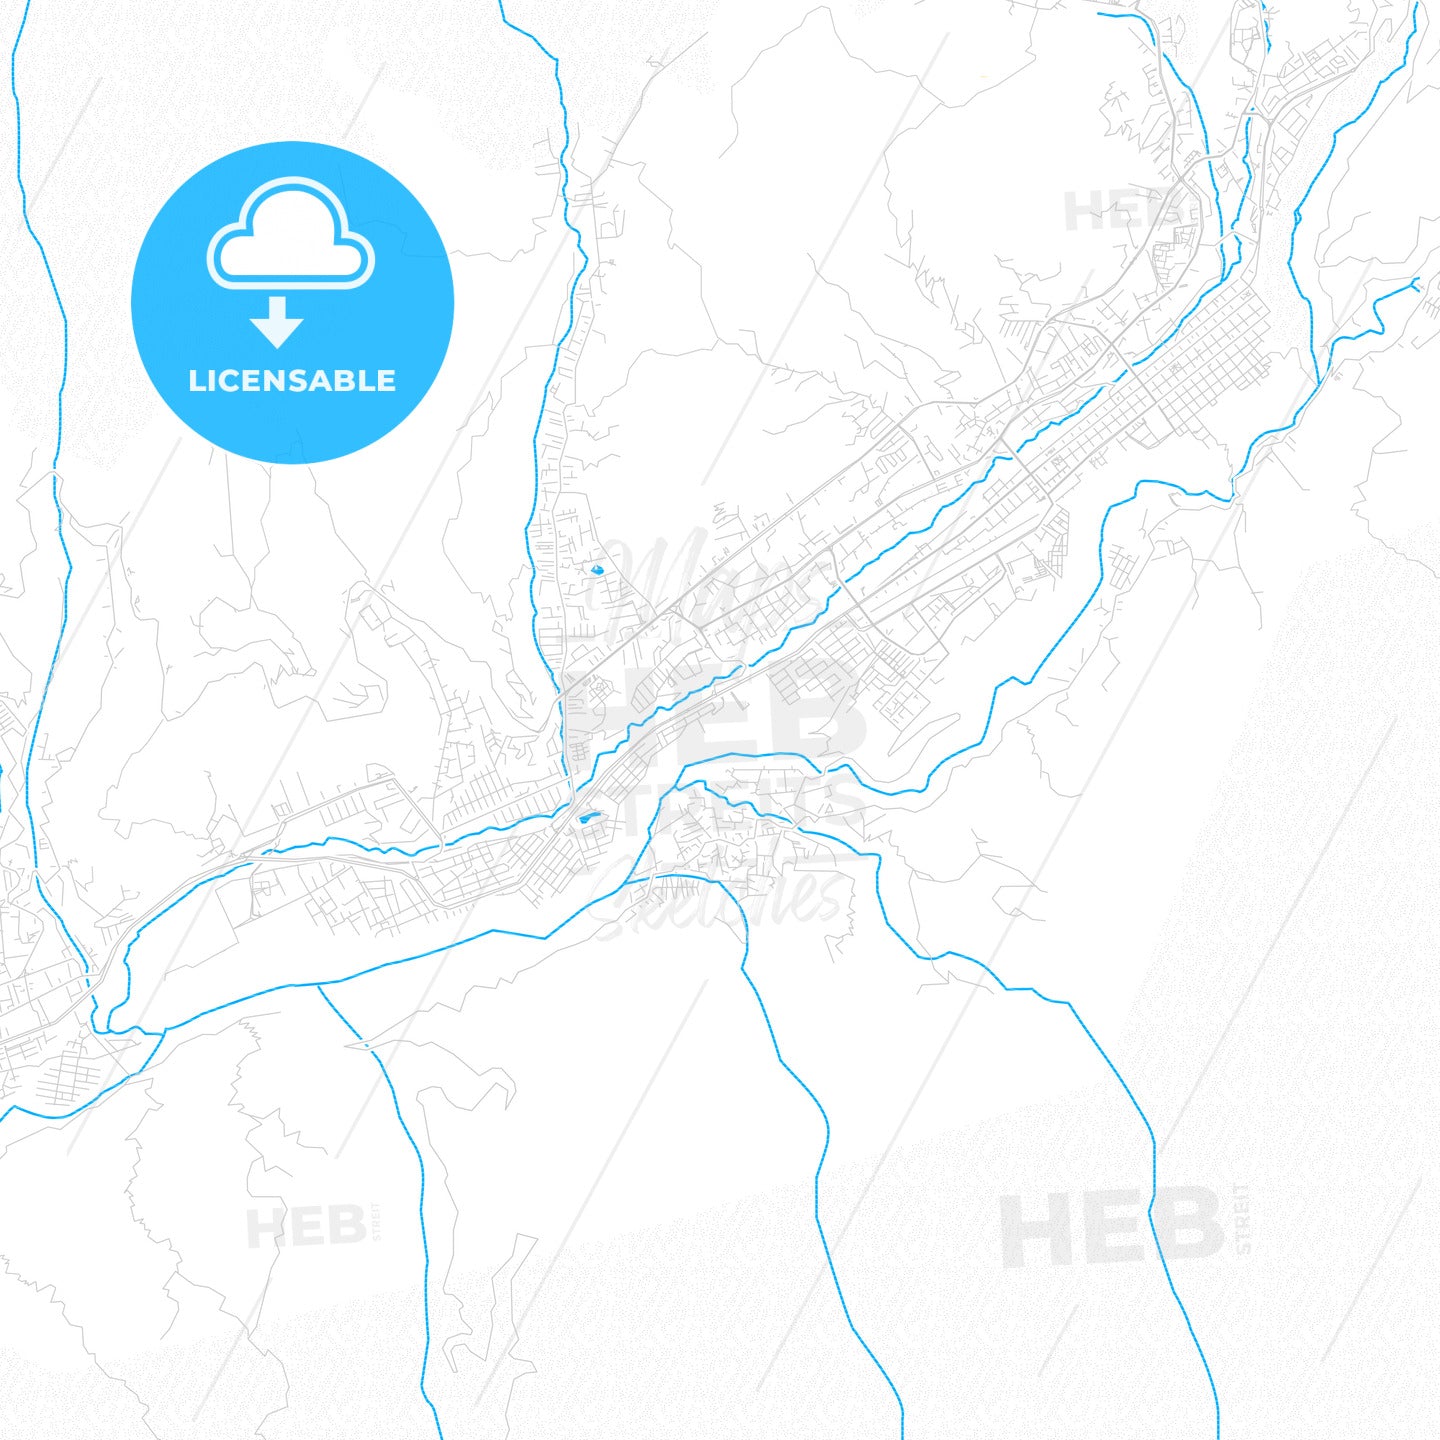 Merida, Venezuela PDF vector map with water in focus